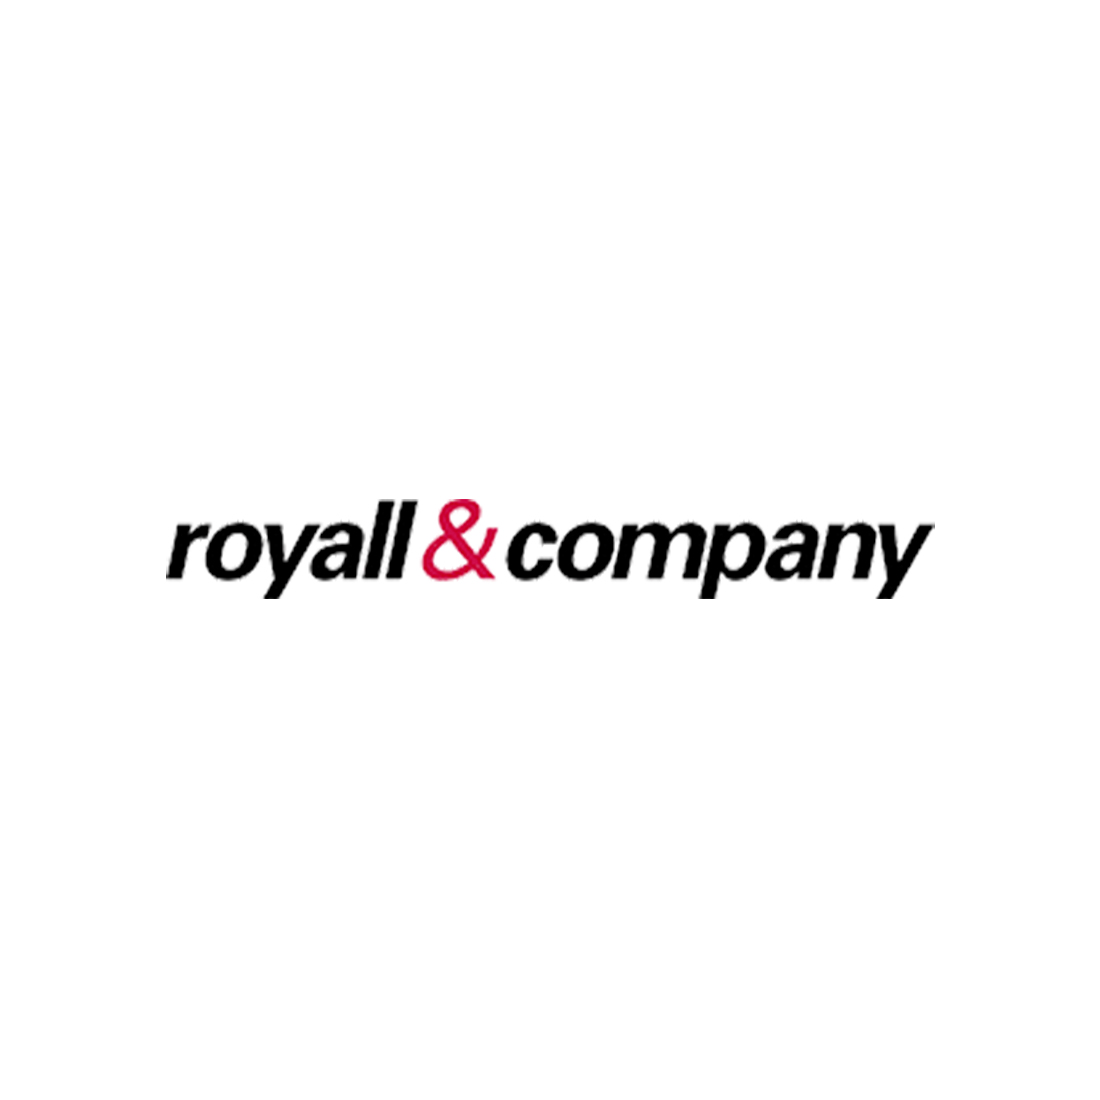 Royall & Company